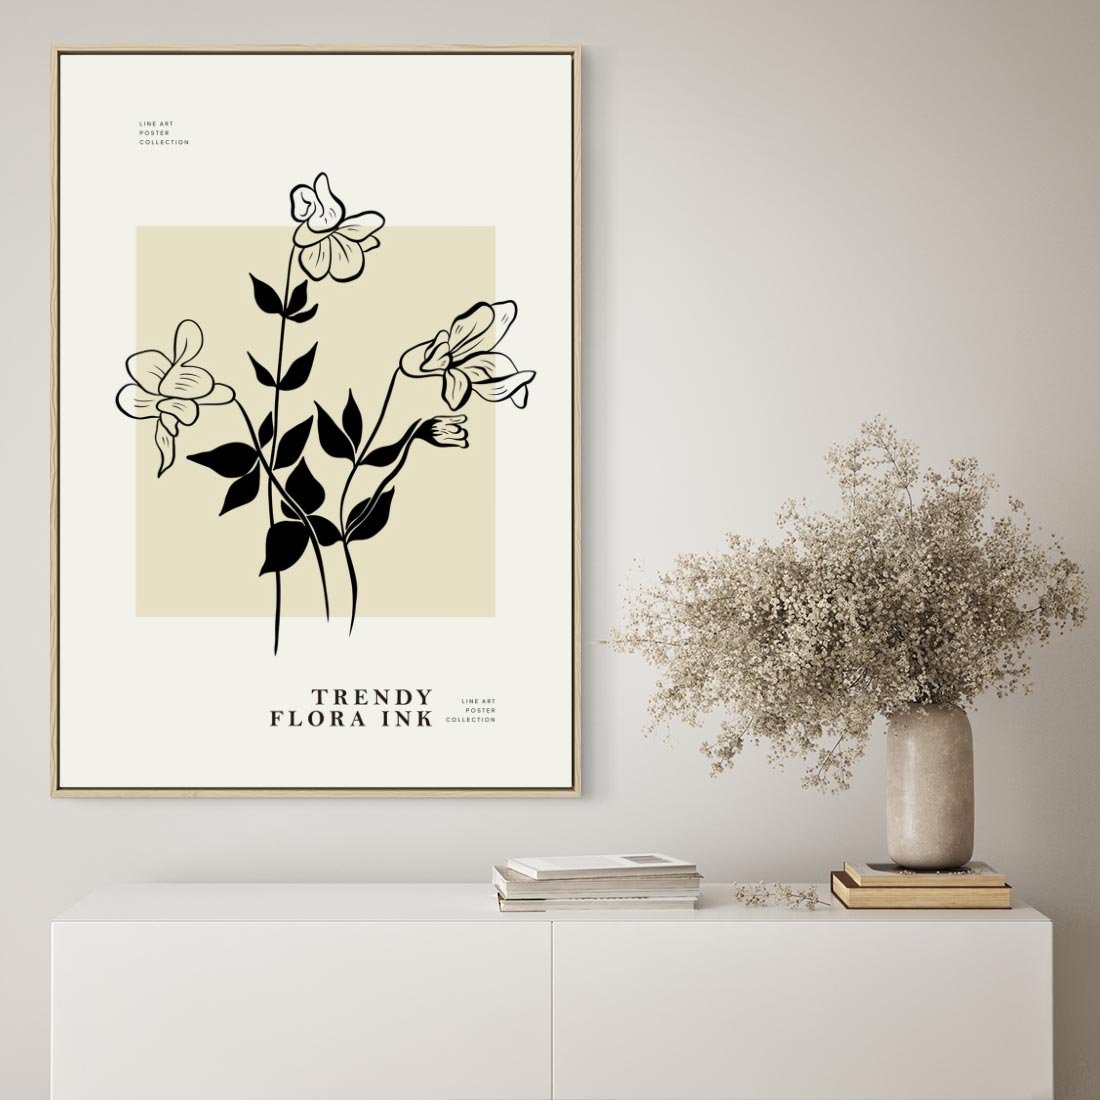 Obraz w ramie 50x70 - Malowane szkicowe tęsknoty - kwiaty, typografia - rama drewno